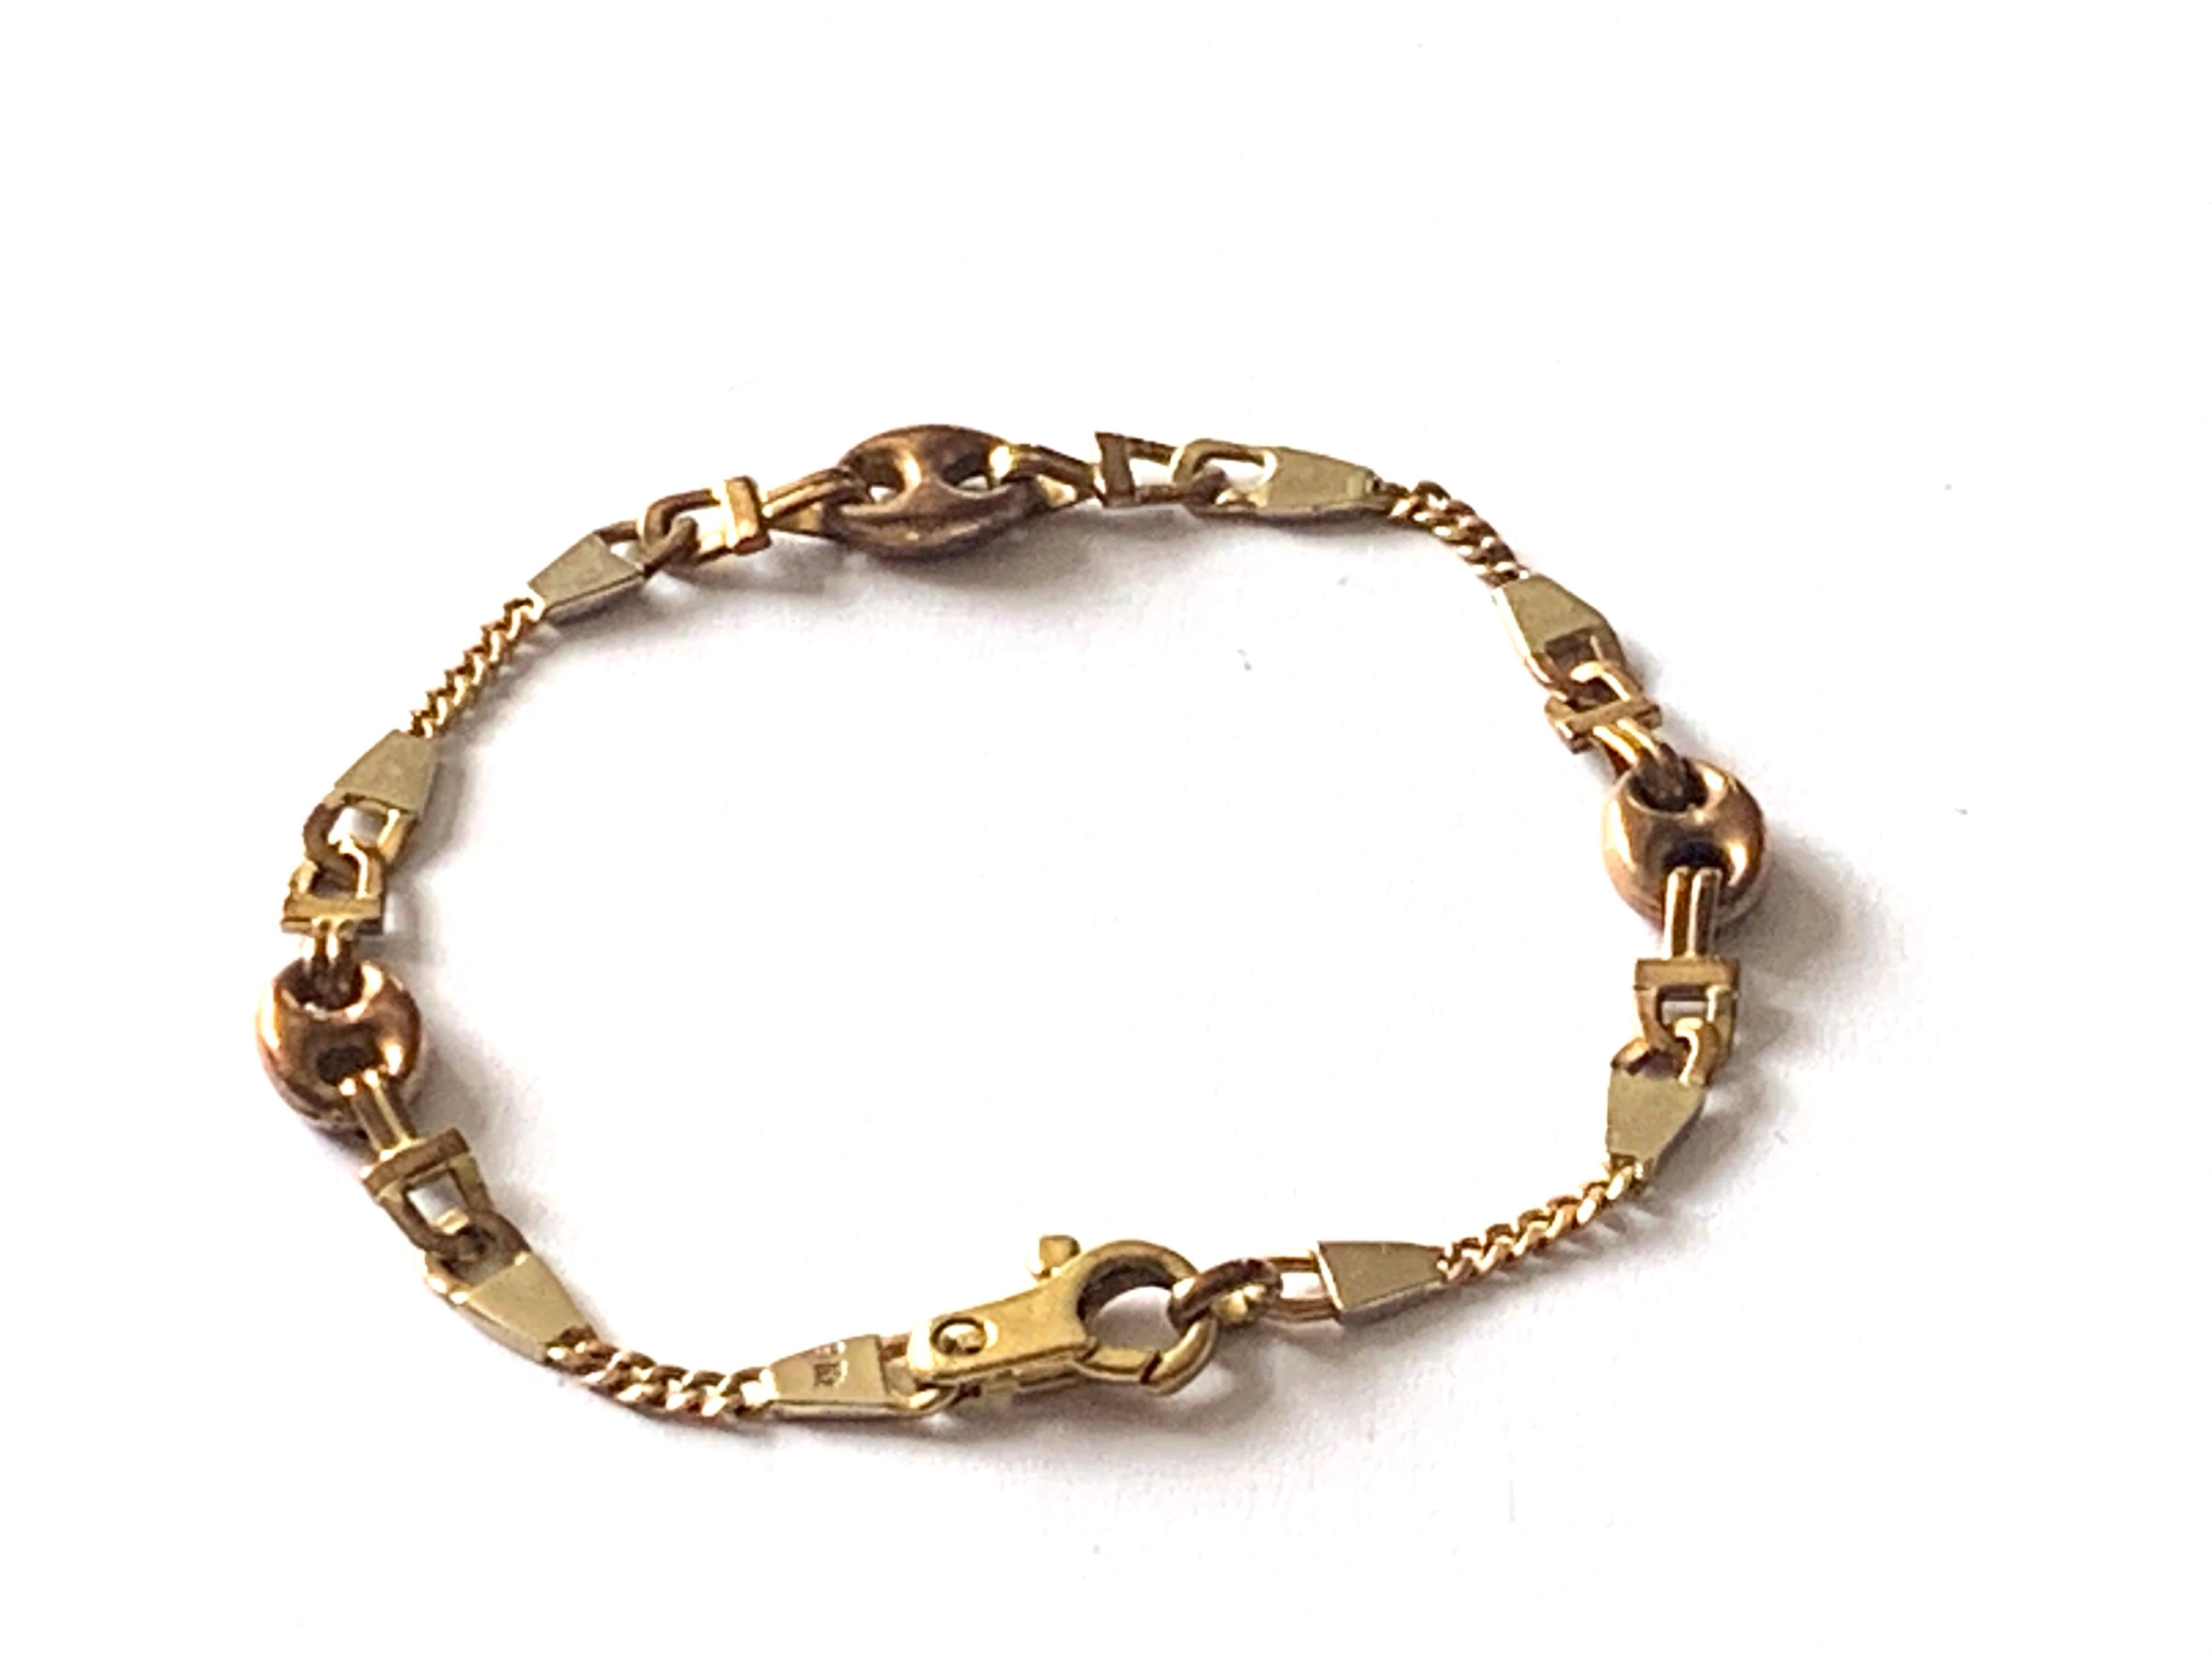 9ct gold bracelets